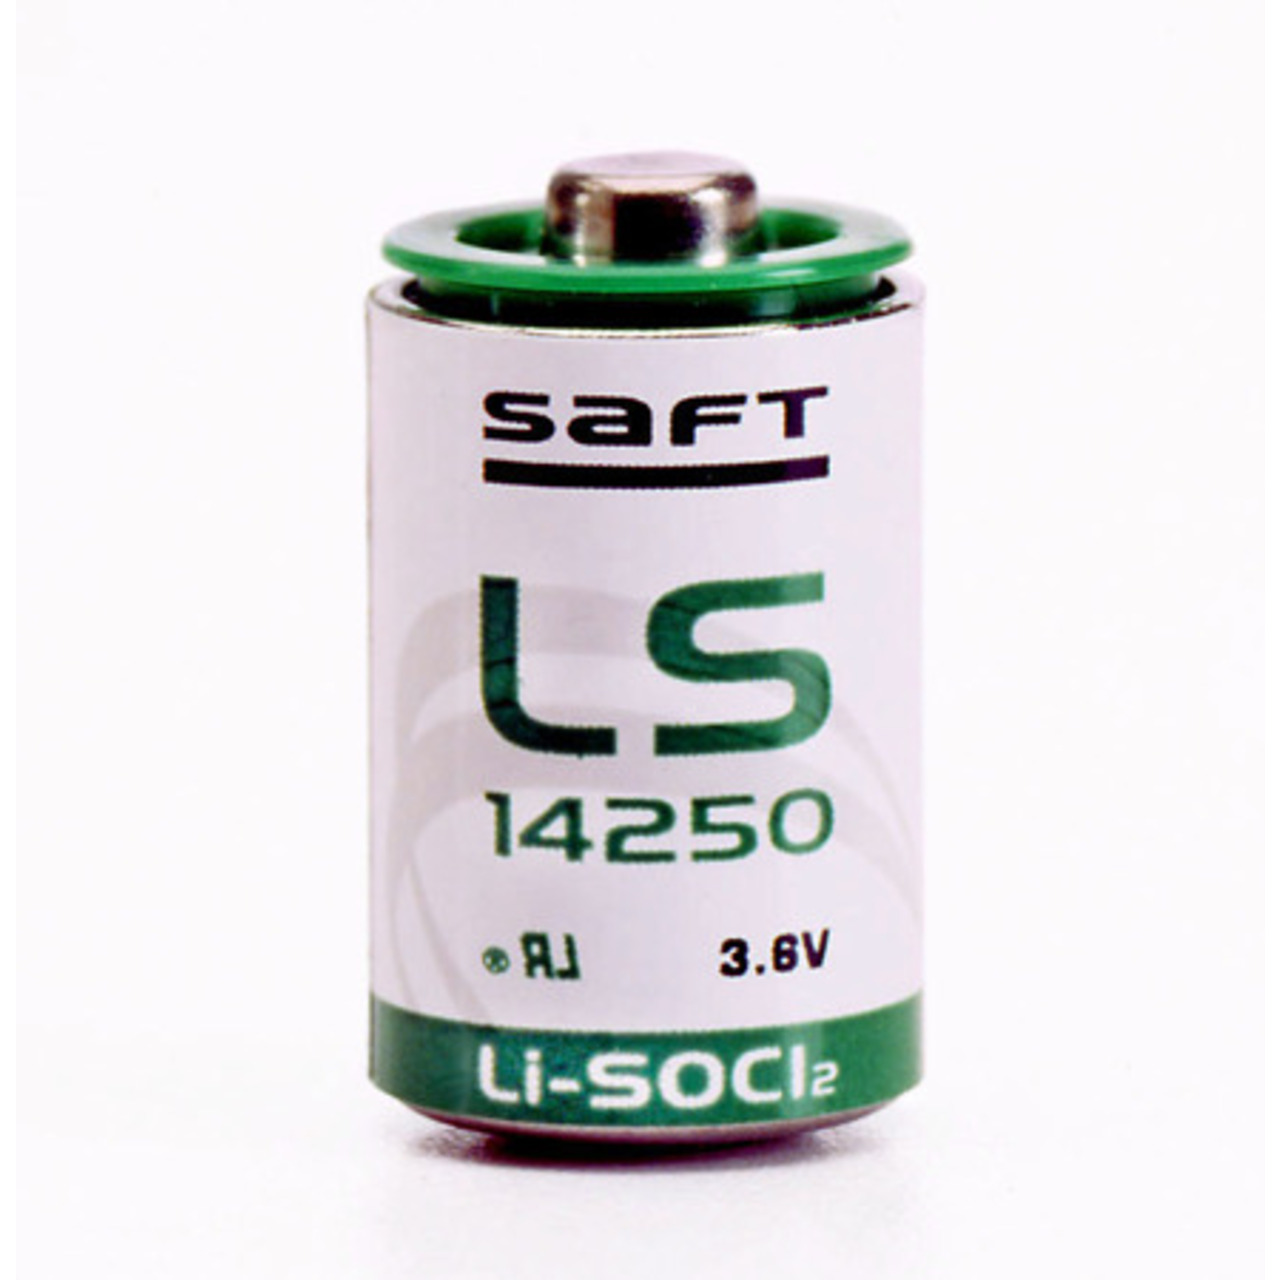 Saft Lithium-Batterie LS-14250- 1-2 Mignon AA- 3-6 V- 1200 mAh- 50er-Pack